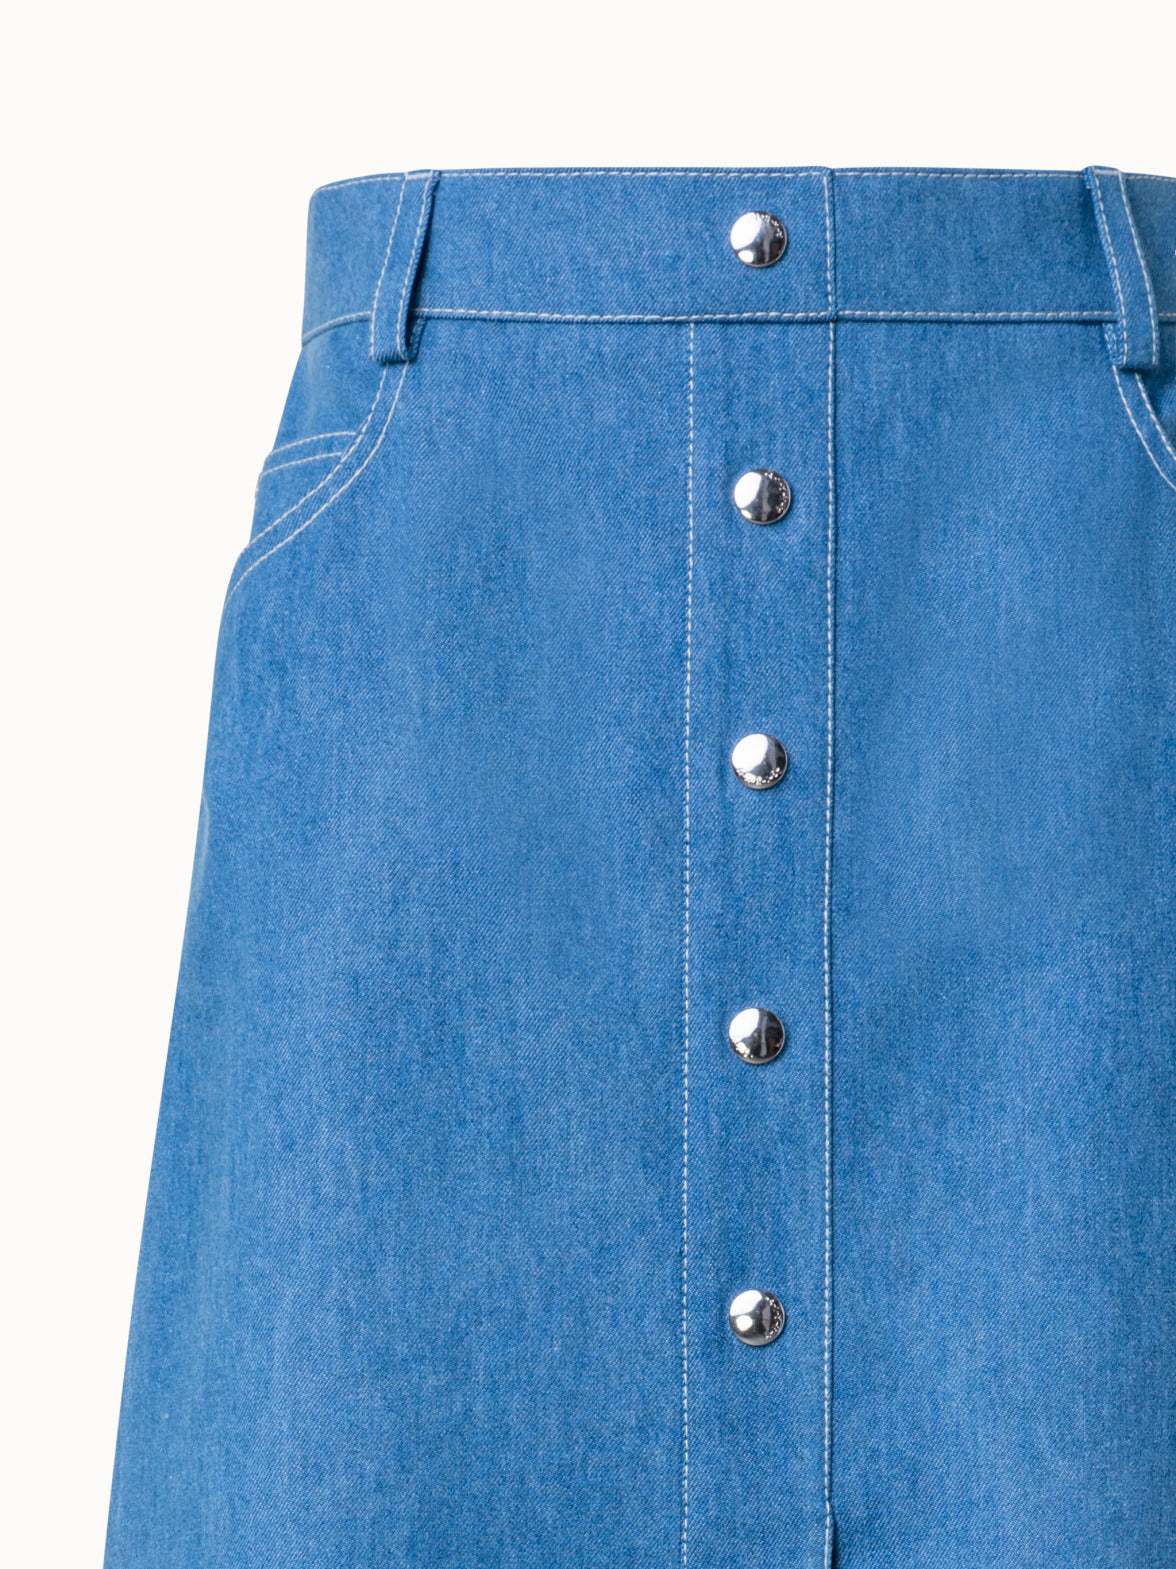 Women High Split Denim Jean Skirt Button Up Gradient Blue A-Line Long Skirt  | eBay